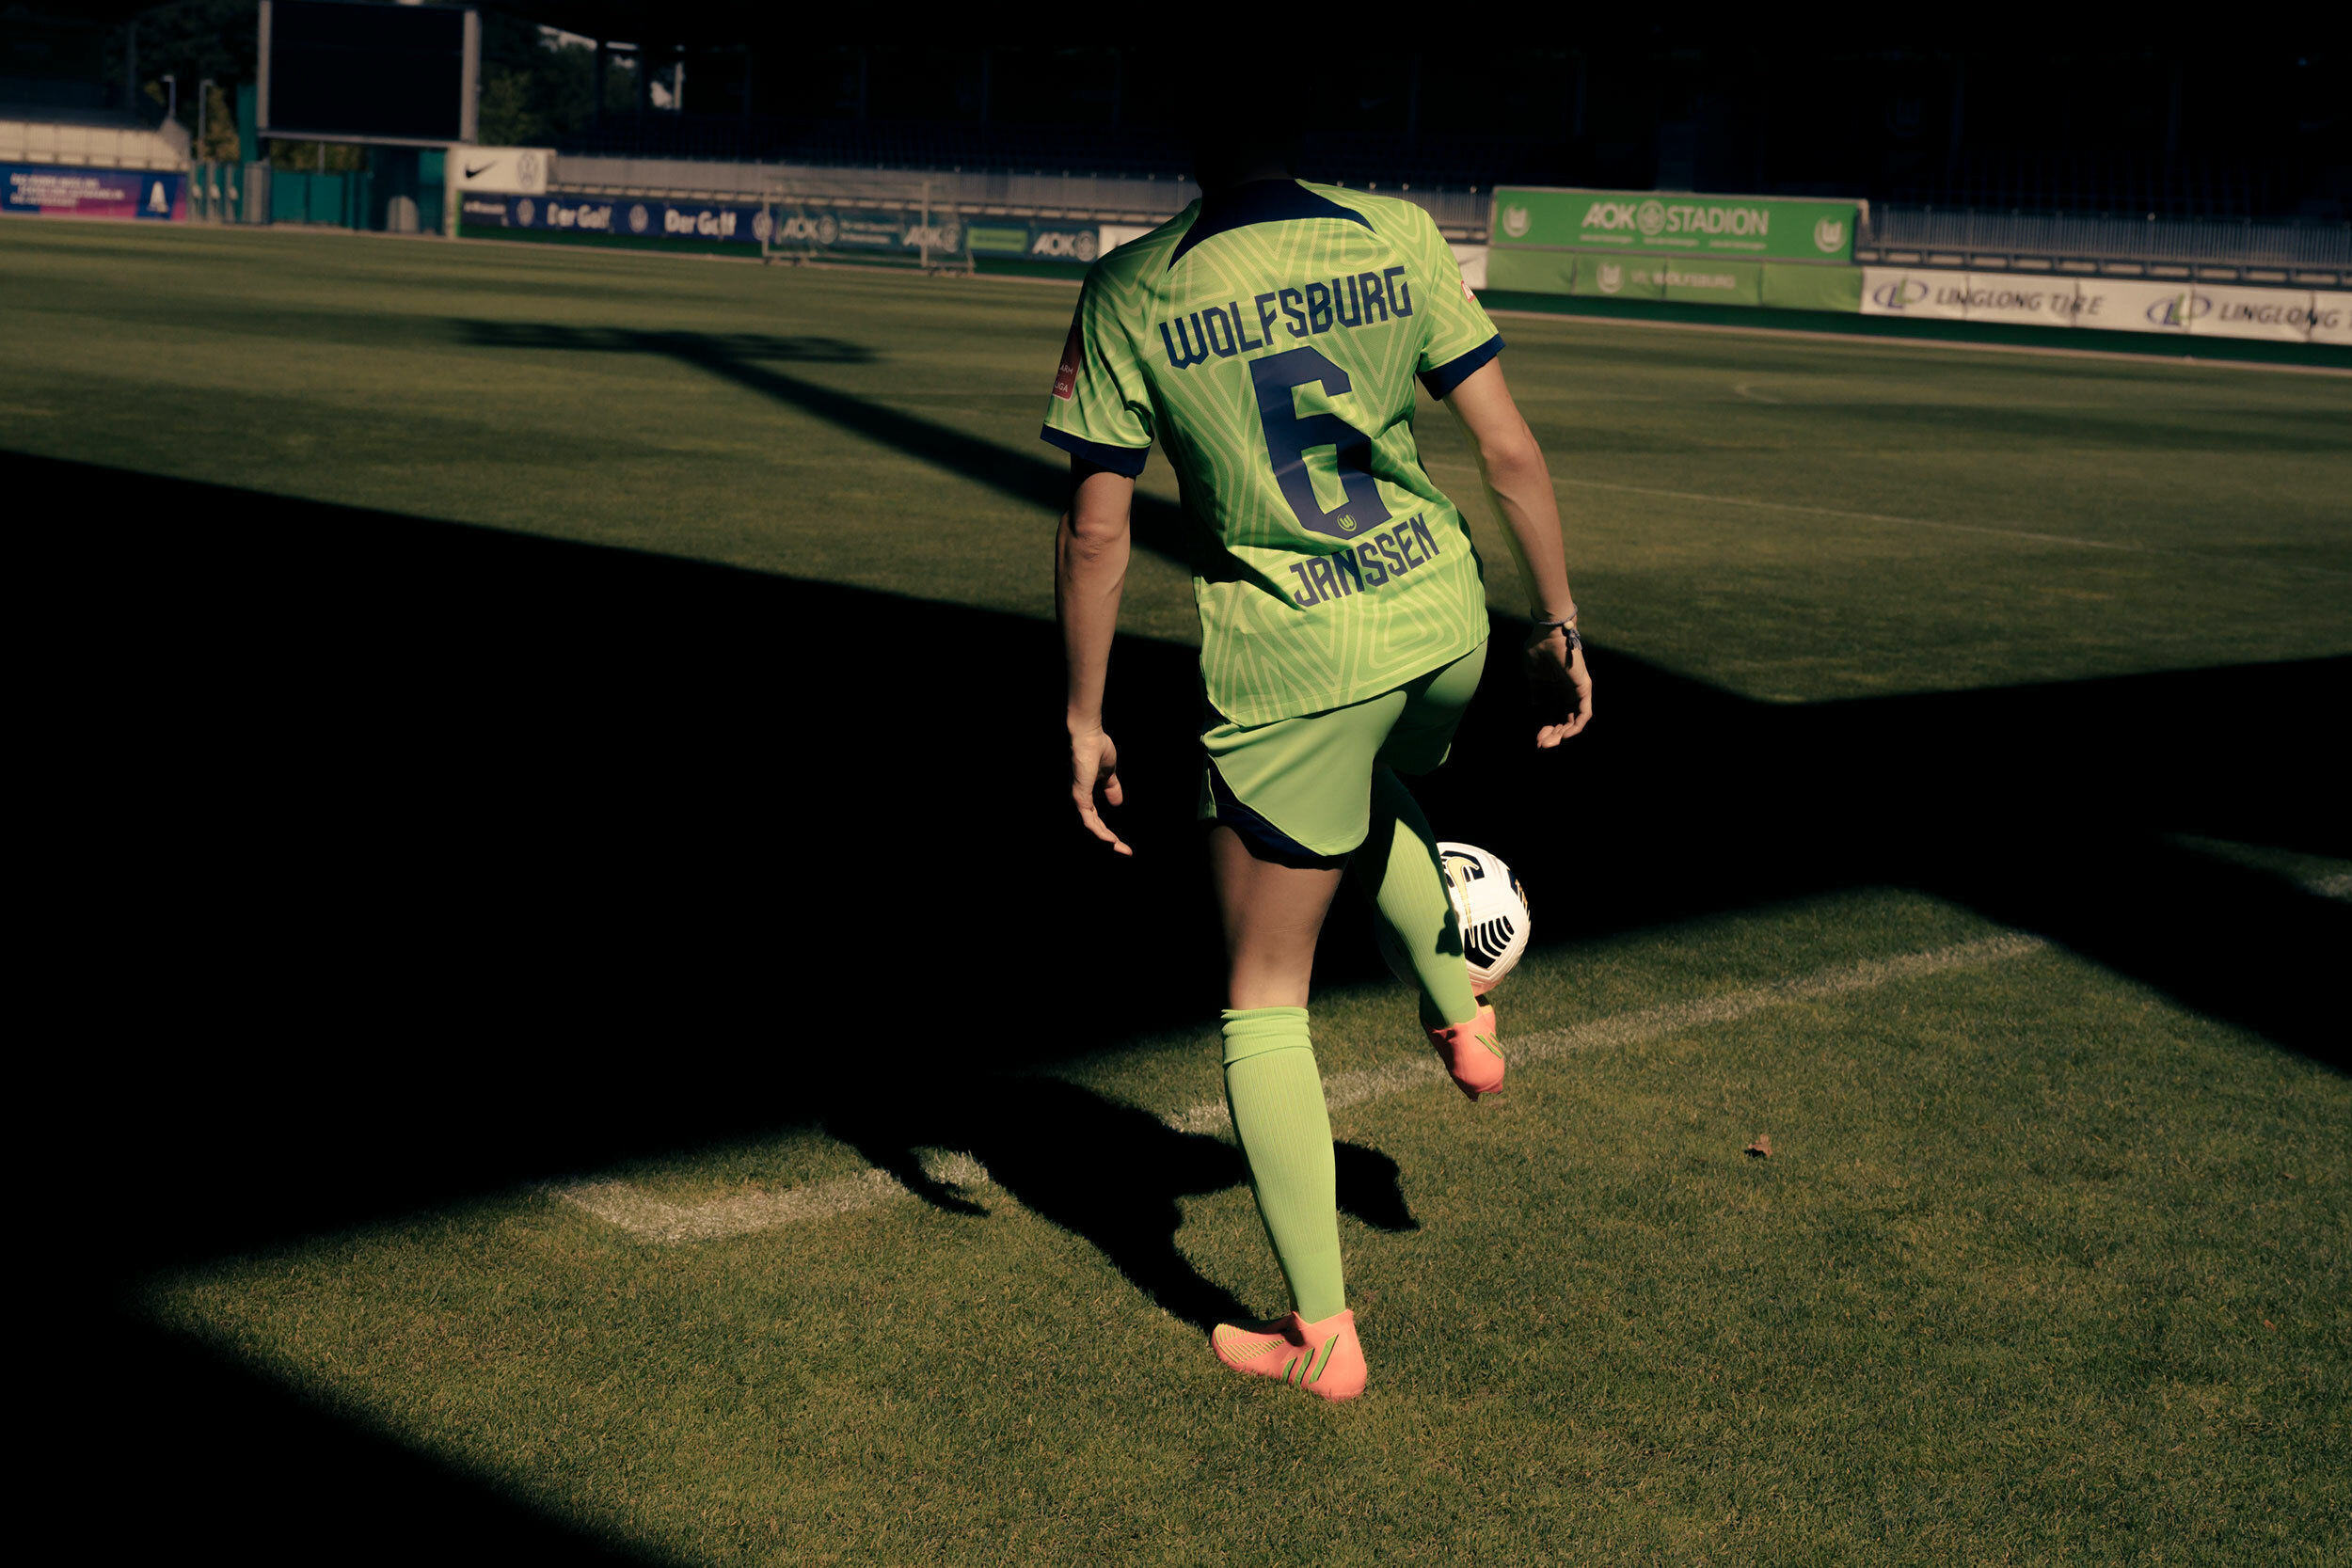 Rückansicht von Dominique Janssen beim Tribbeln. Die Fußballerin trägt ein grünes Trikot mit der Nr. 6 und lupft einen Ball.